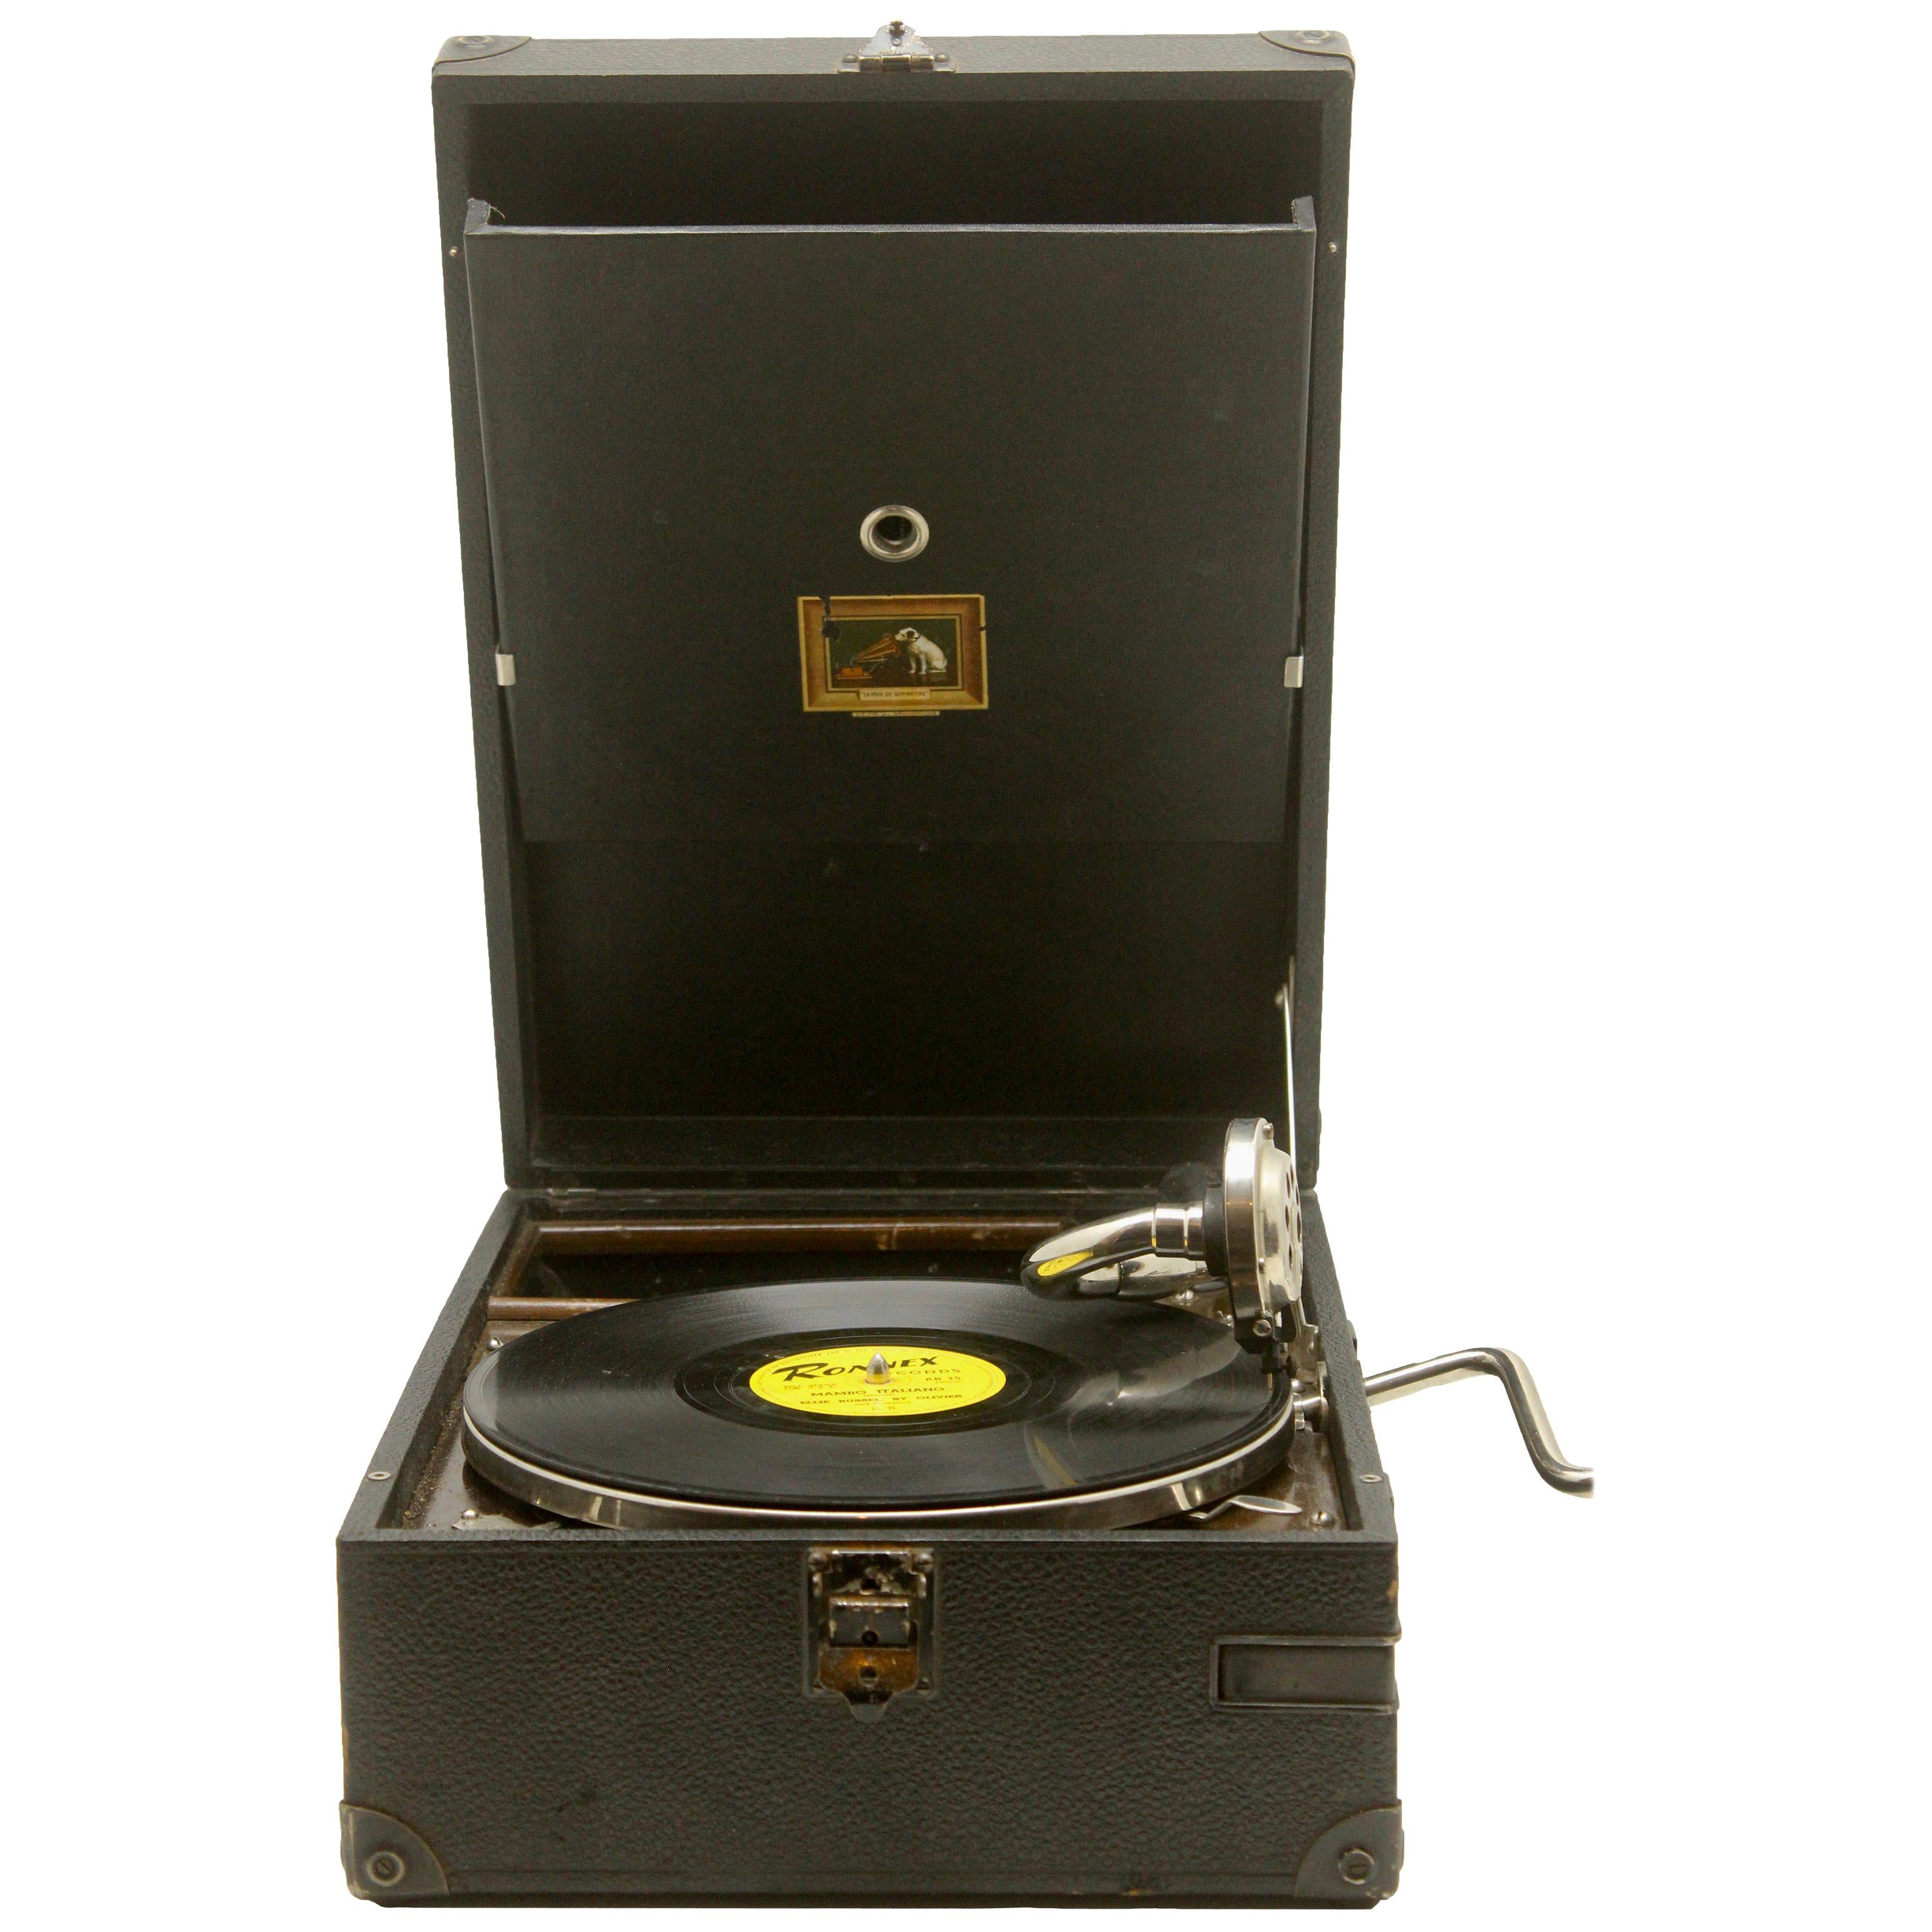 Suitcase Gramophone “La Voix de son Maître” 'His Master’s Voice' Model HMV 101